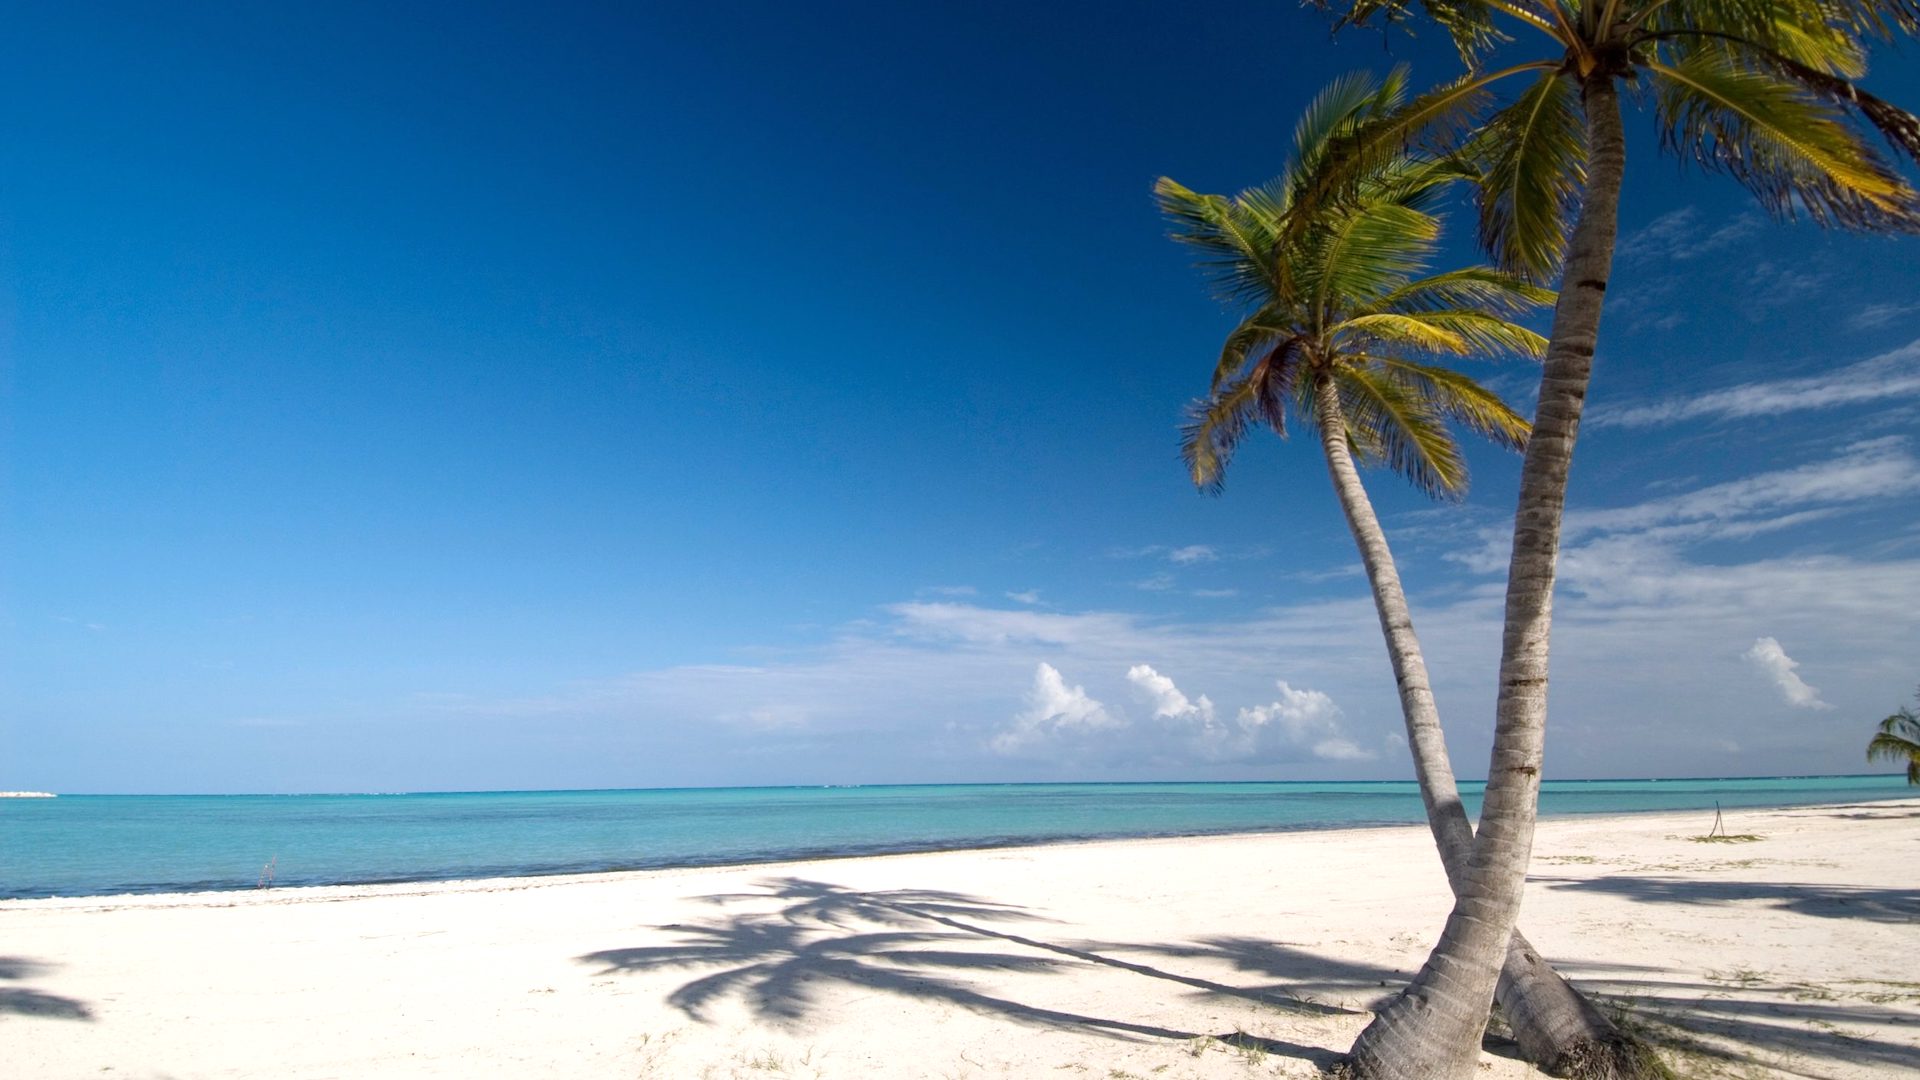 República Dominicana en el Top15 entre los destinos más populares del mundo 2020, segun TripAdvisor